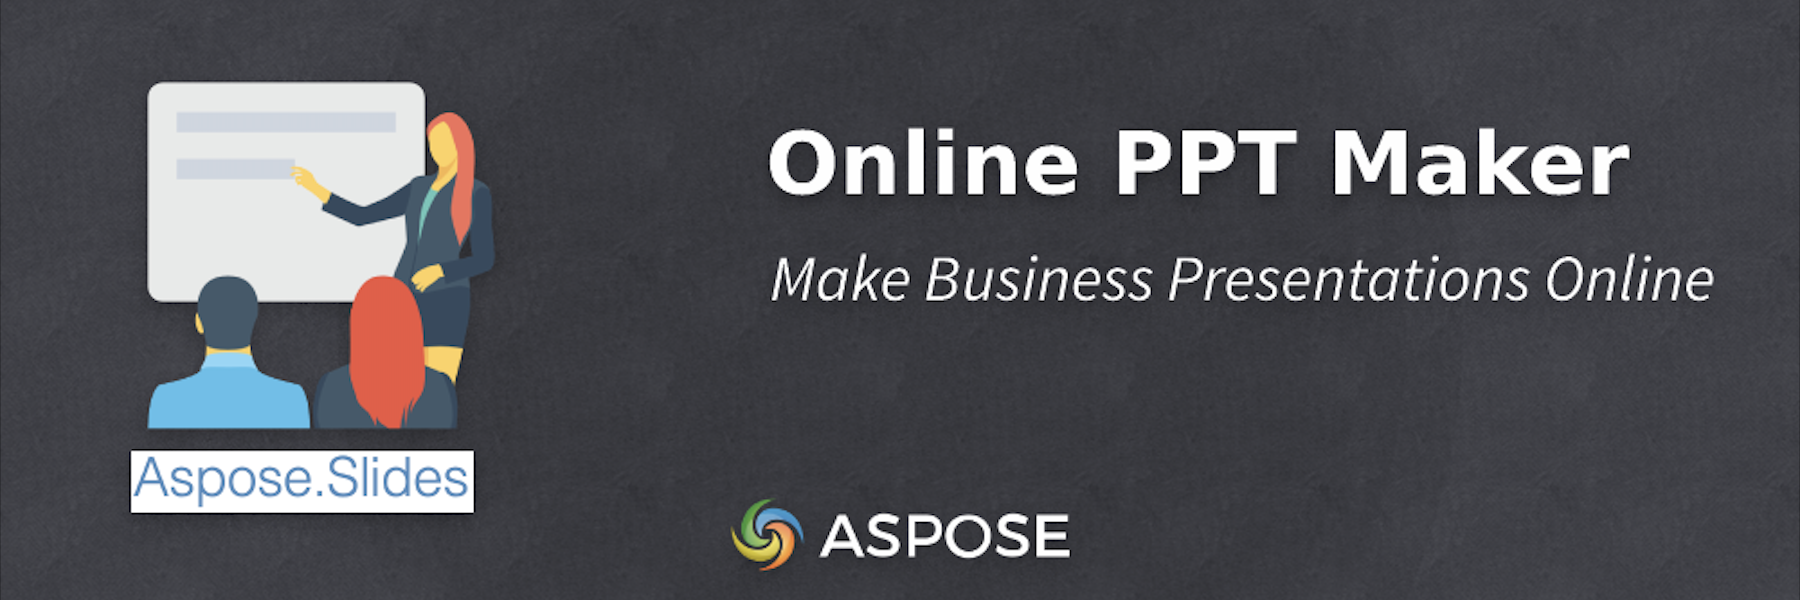 Online PPT Maker - עשה מצגות עסקיות באינטרנט